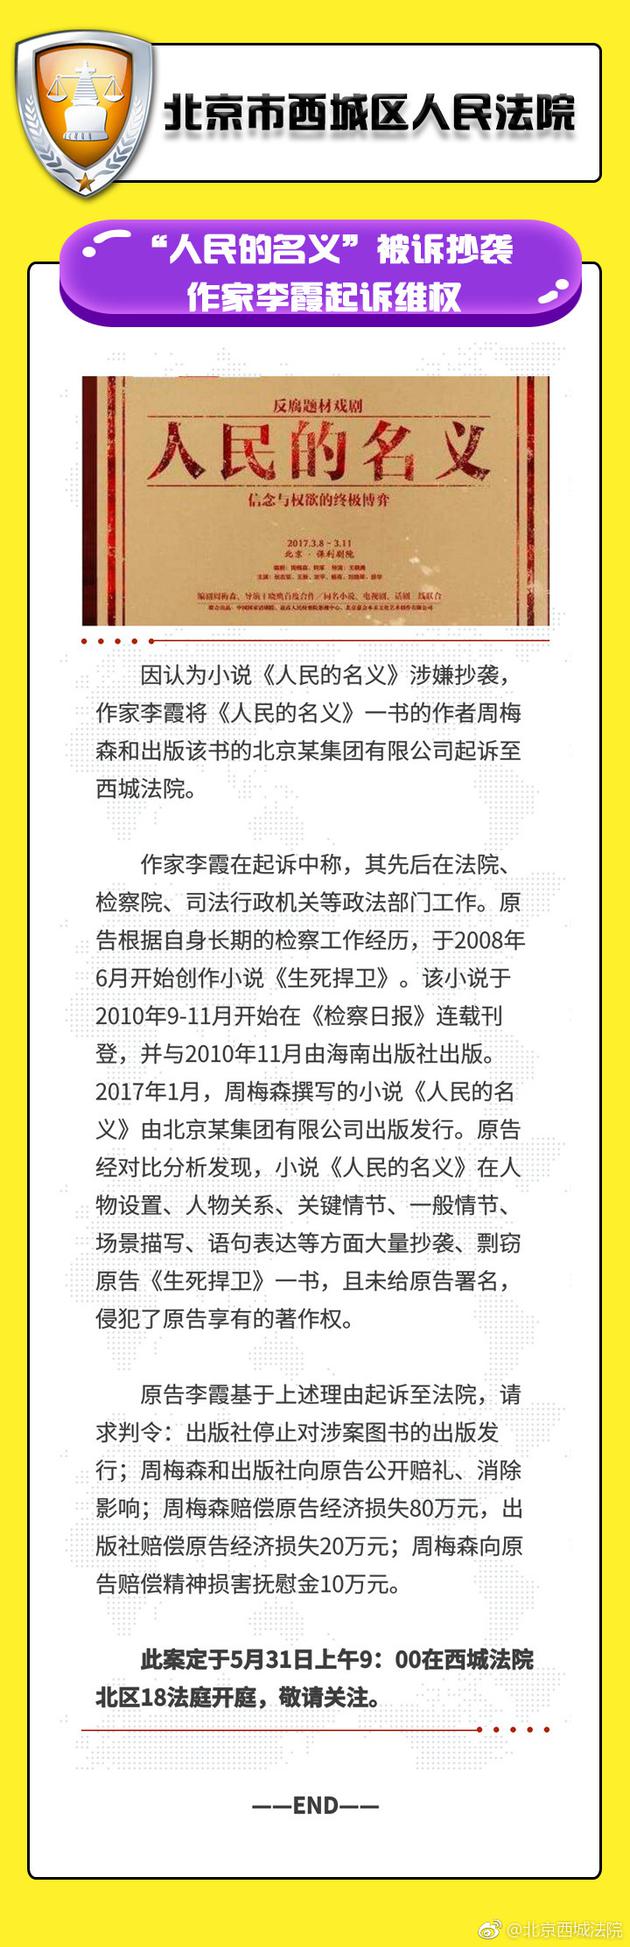 北京西城法院关于该案件的公告